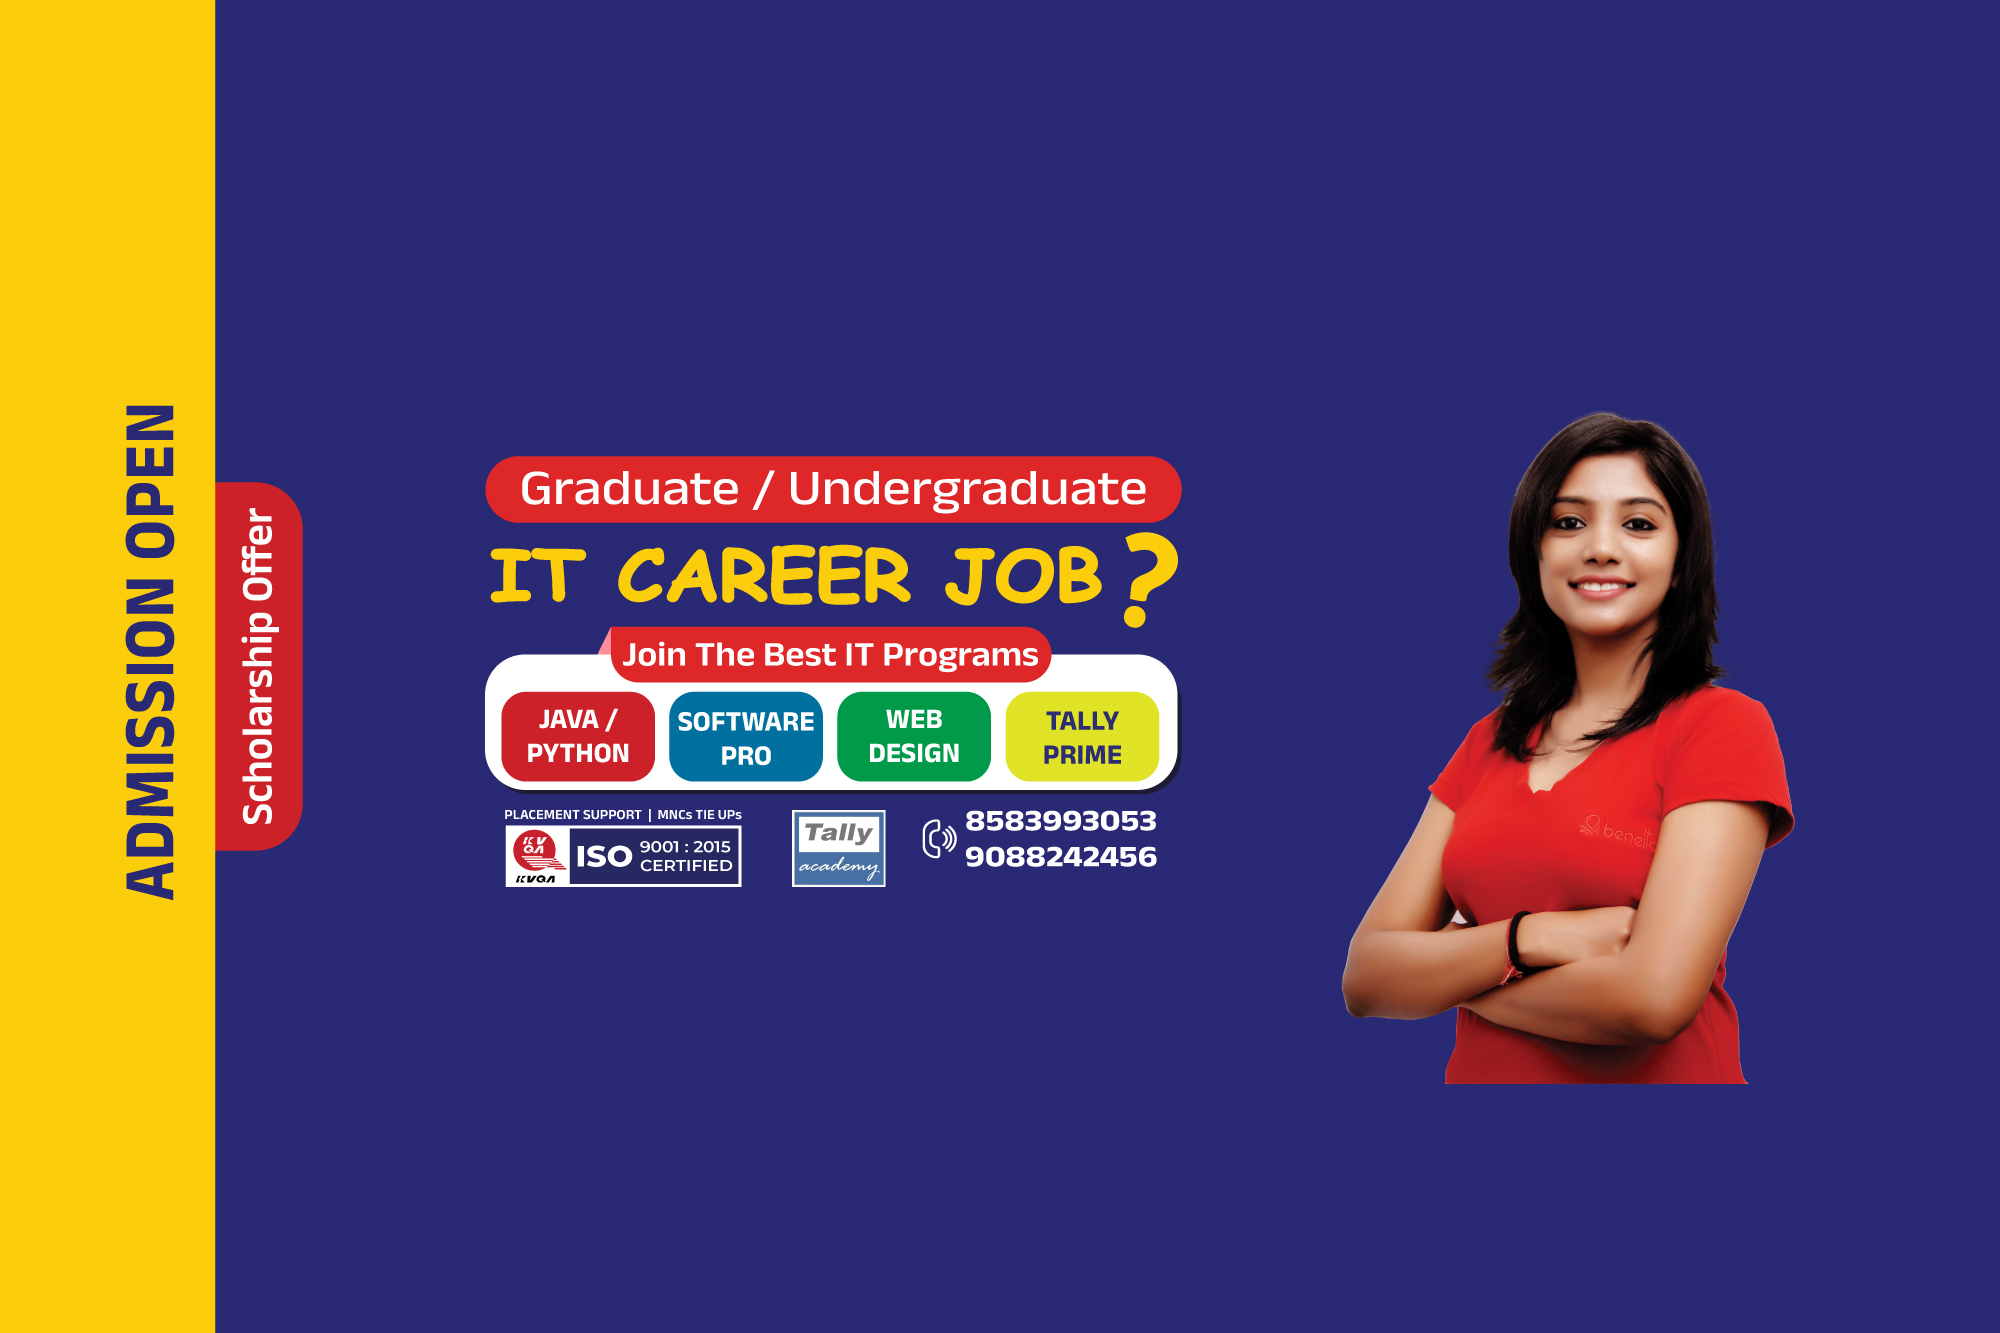 Graduate and Undergraduate need IT Career Job